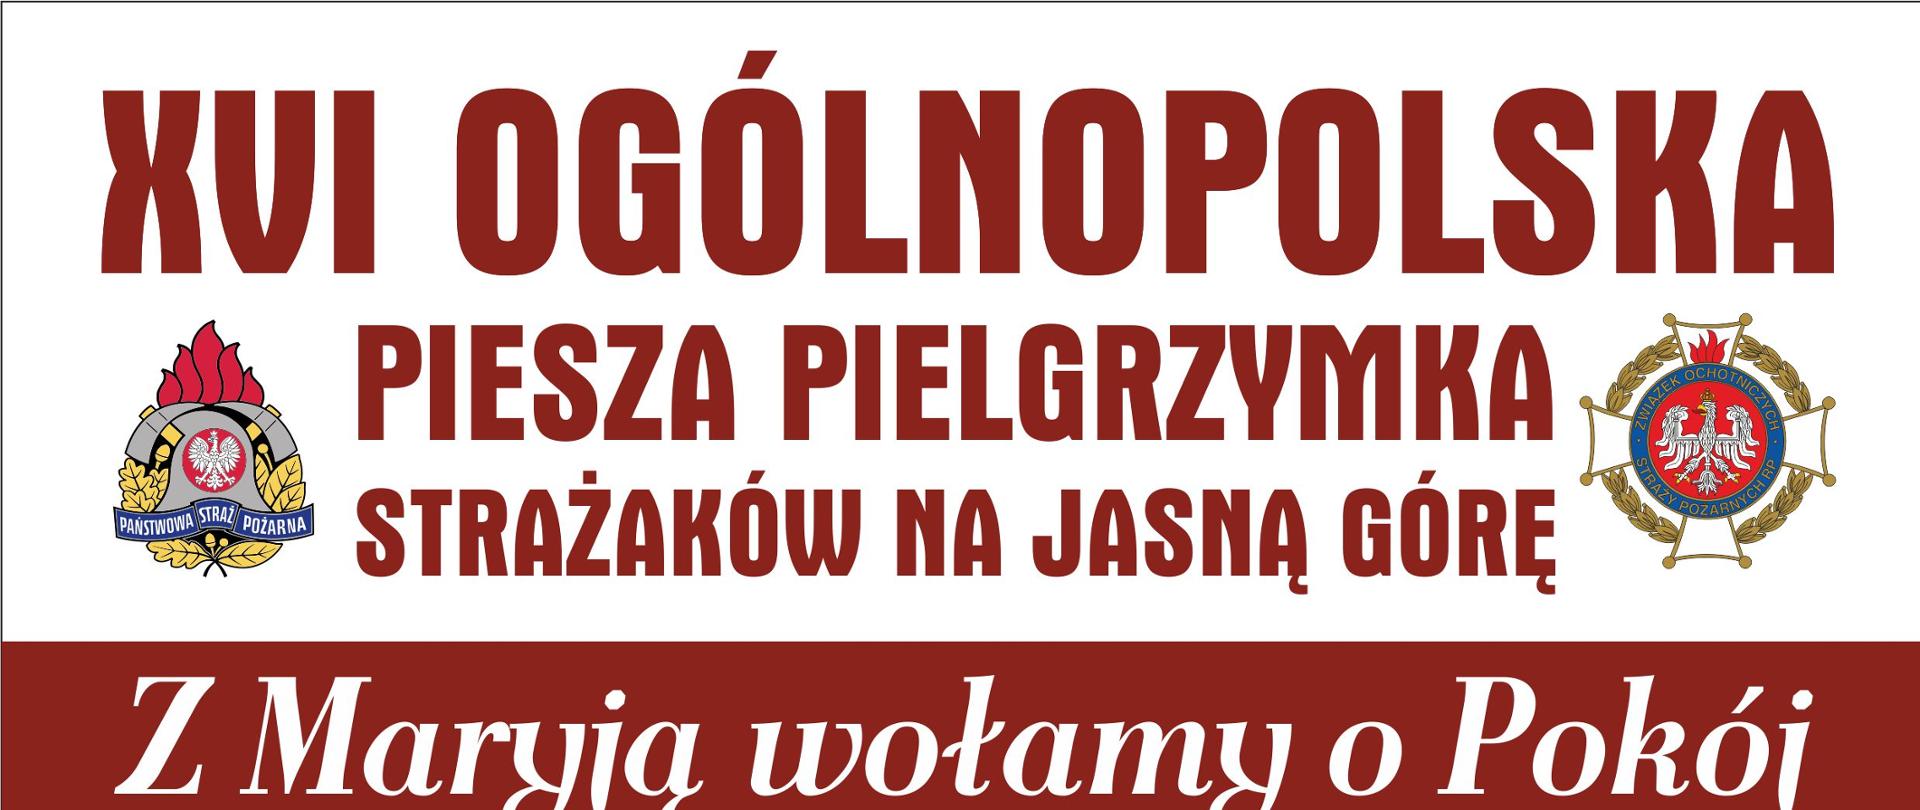 plakat XVI Ogólnopolska Piesza Pielgrzymka Strażaków na Jasną Górę